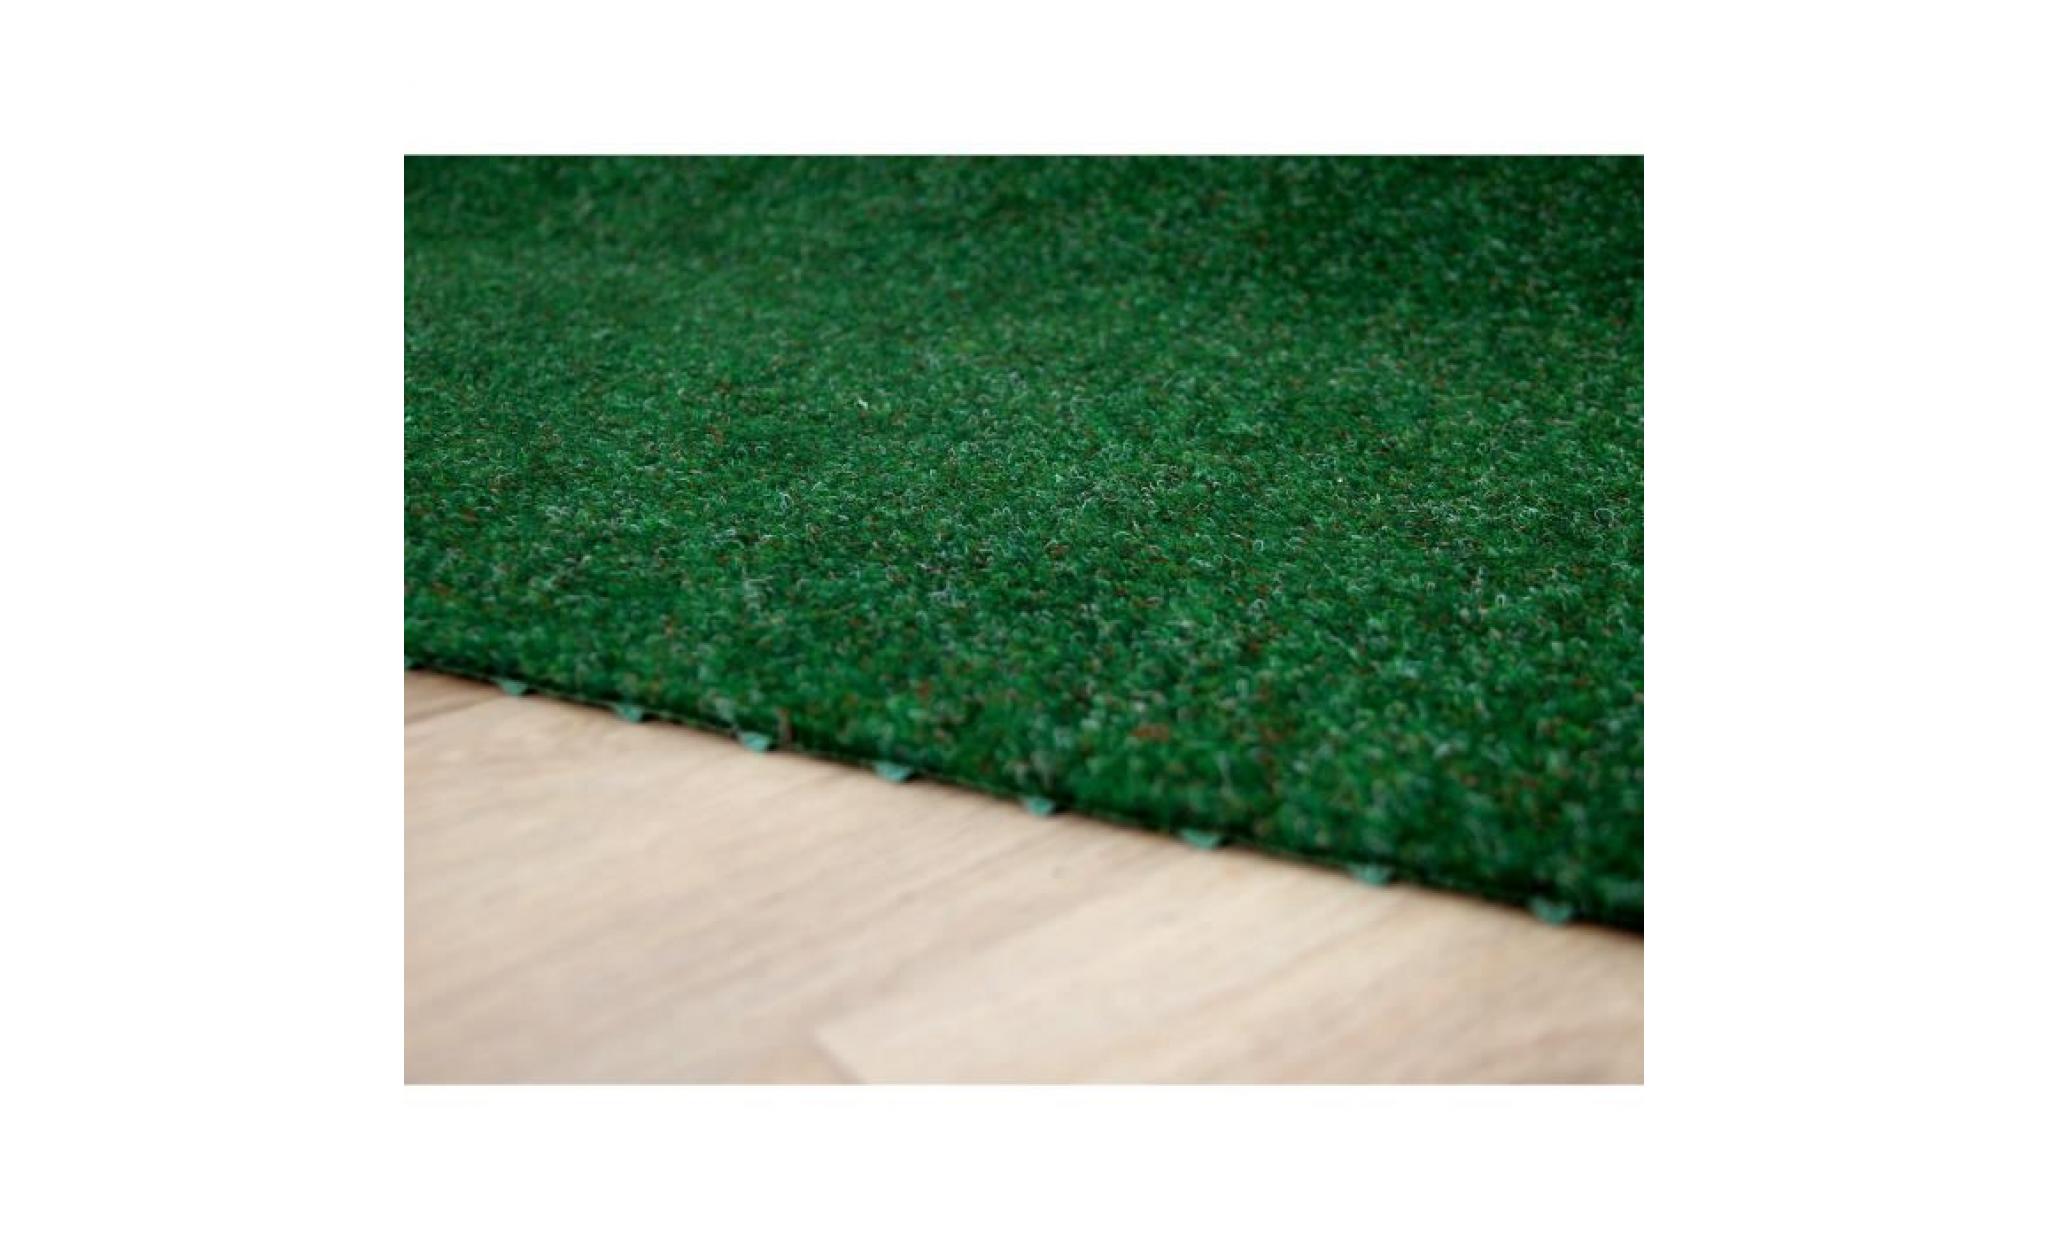 kingston   tapis type gazon artificiel – pour jardin, terrasse, balcon   brun [400x150 cm] pas cher